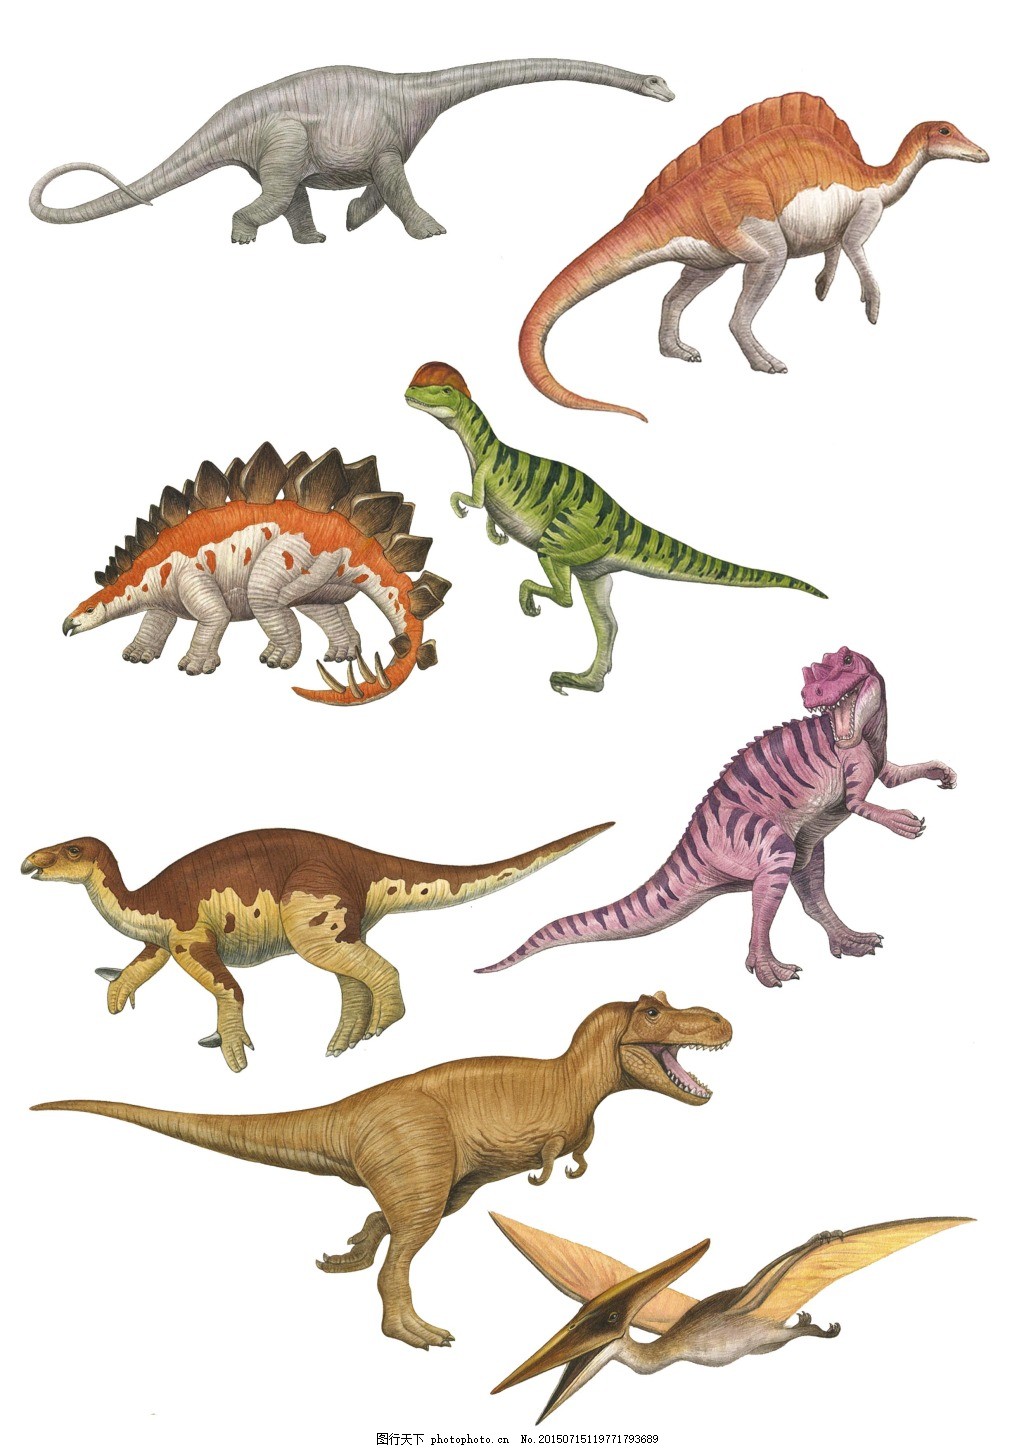 剑角龙_恐龙种类_恐龙品种分类l型名称大全恐龙品类图片大全名字